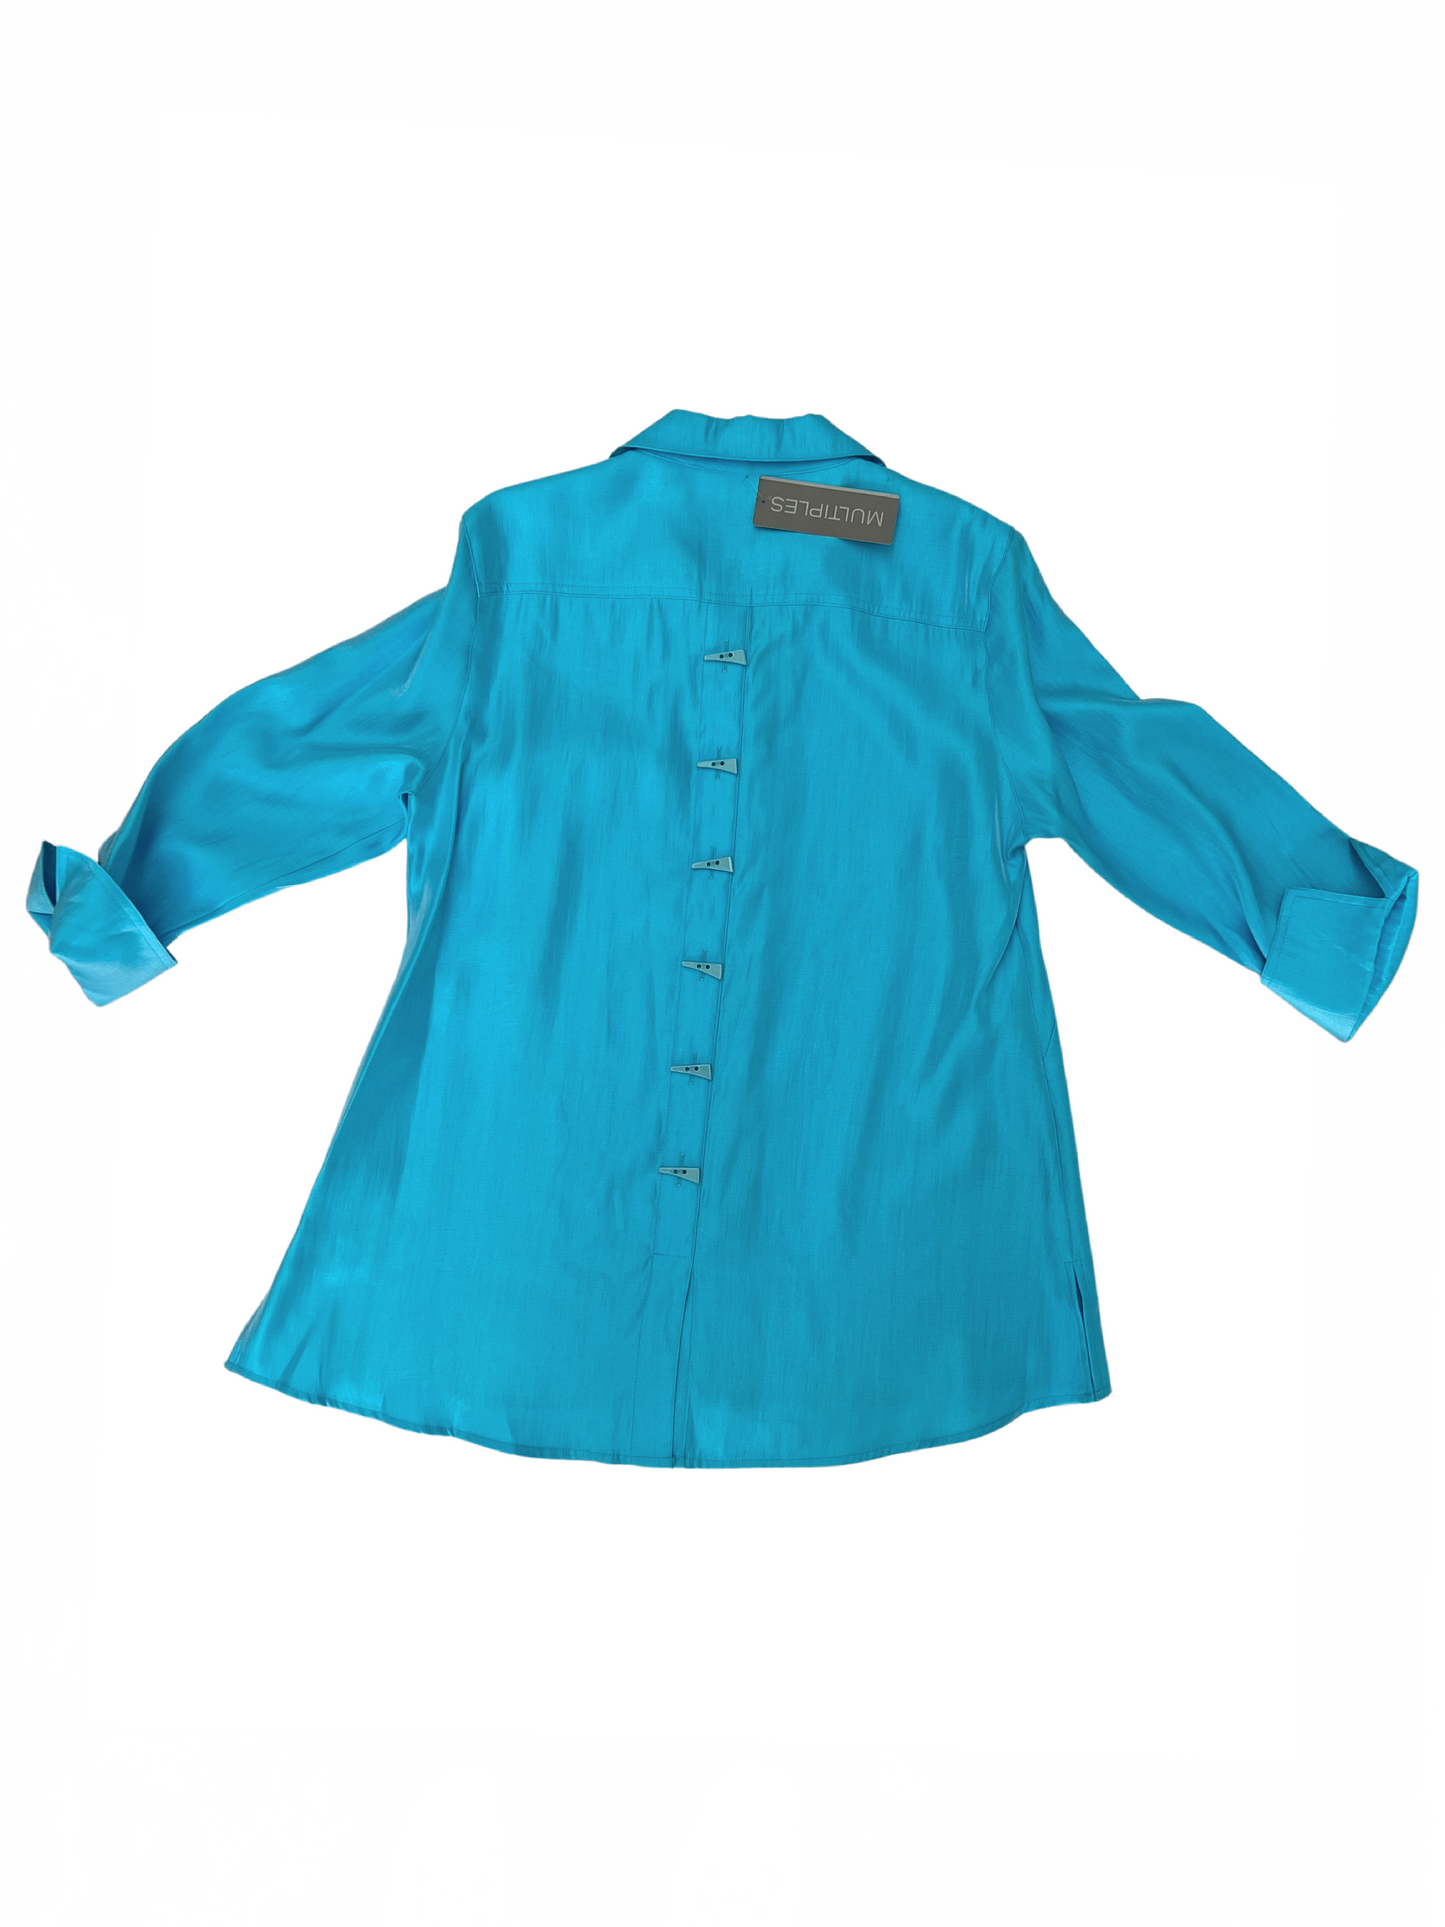 Shimmer Shirt Medium Light Turquoise